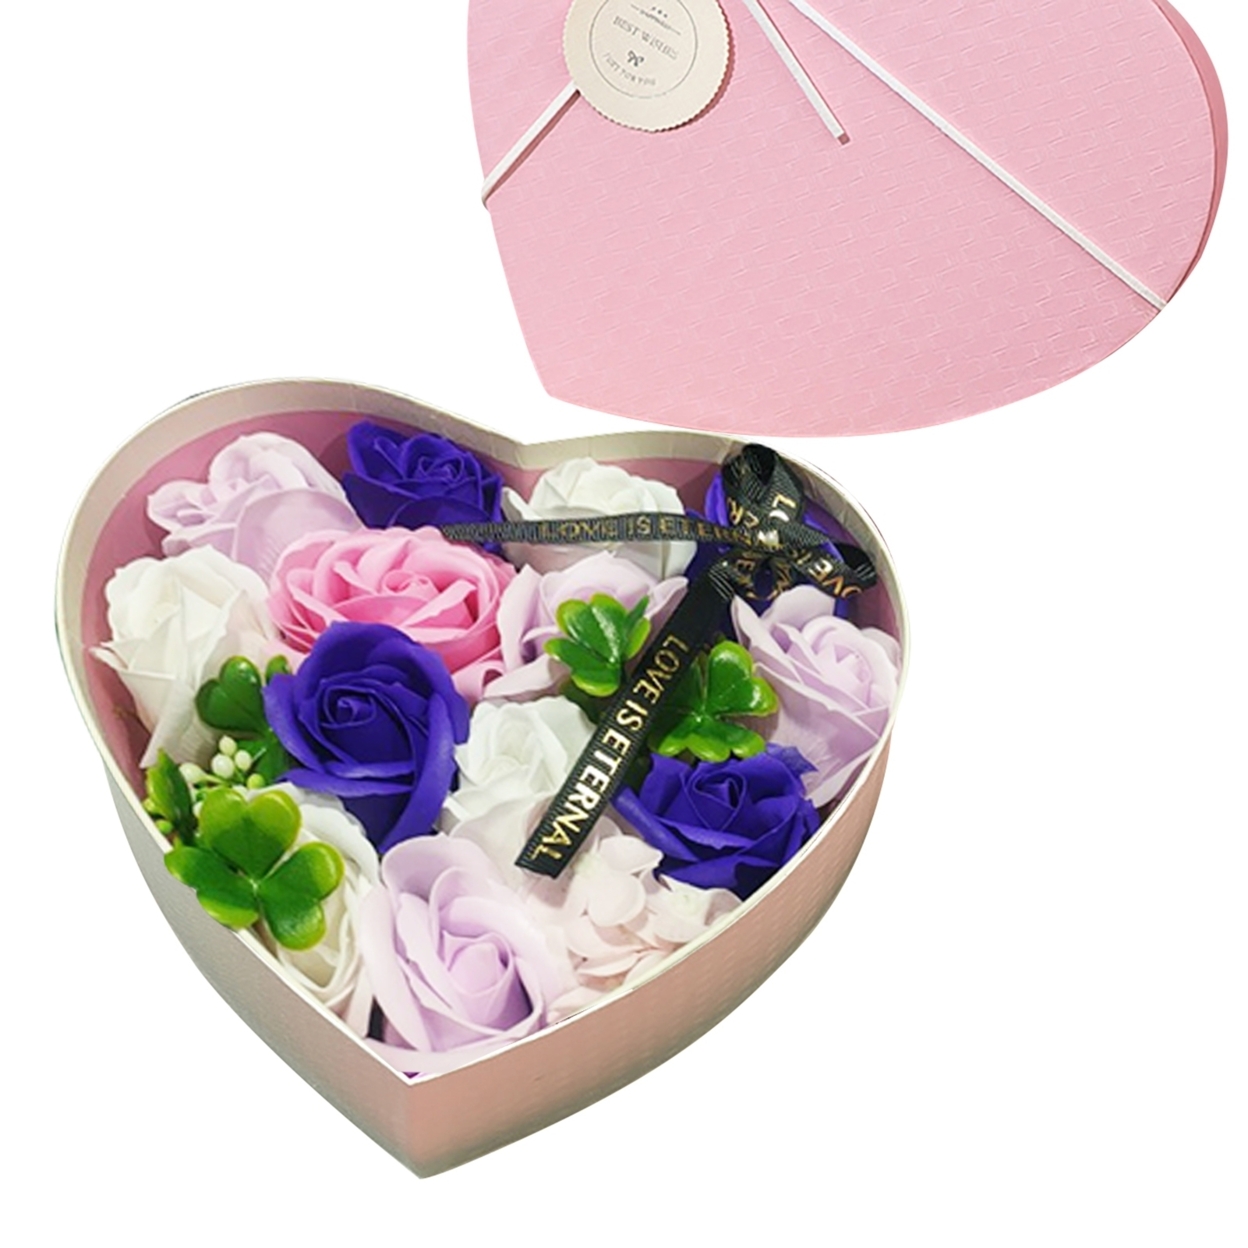 1 Box Exquisite Artificial Soap Flowers Gifts Fragrant Bath Soap Rose Flower Petals Party Favors - purple